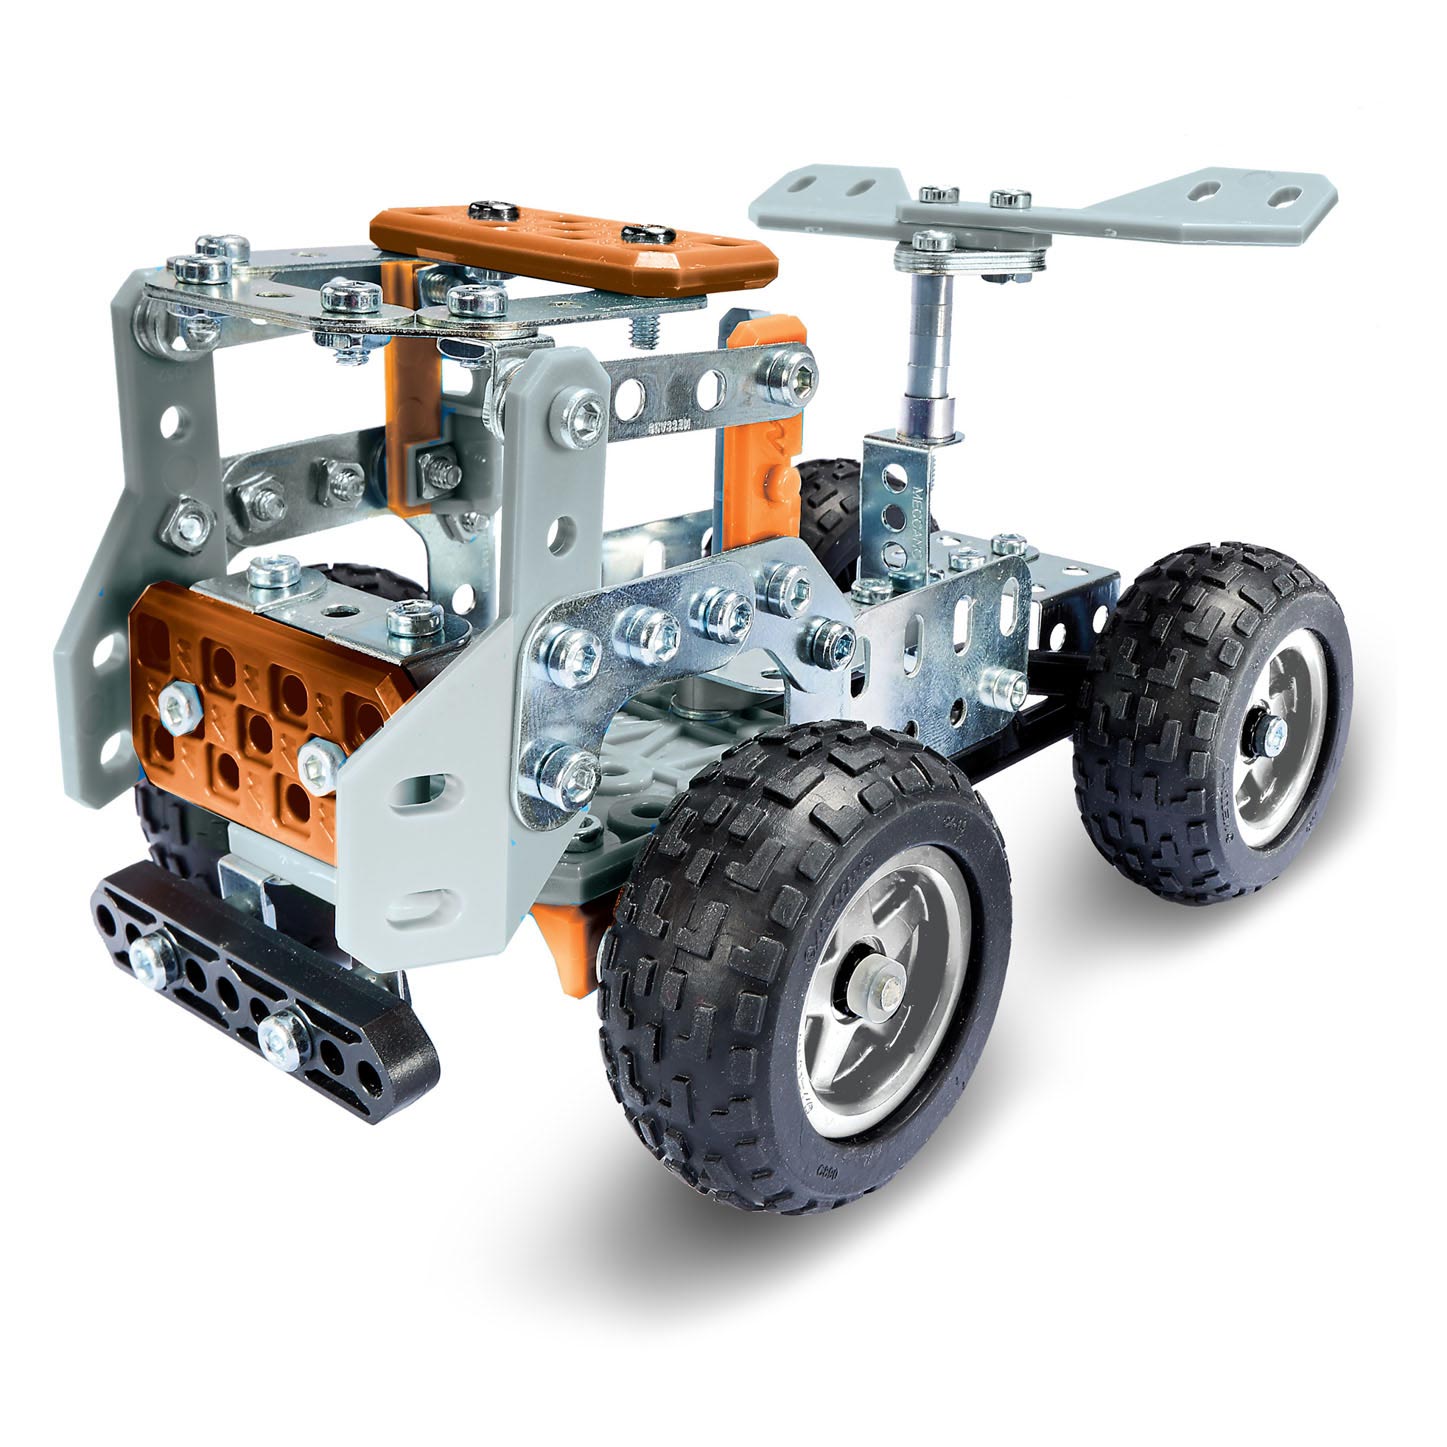 Meccano - Camion de course, kit de construction STEM 15 en 1